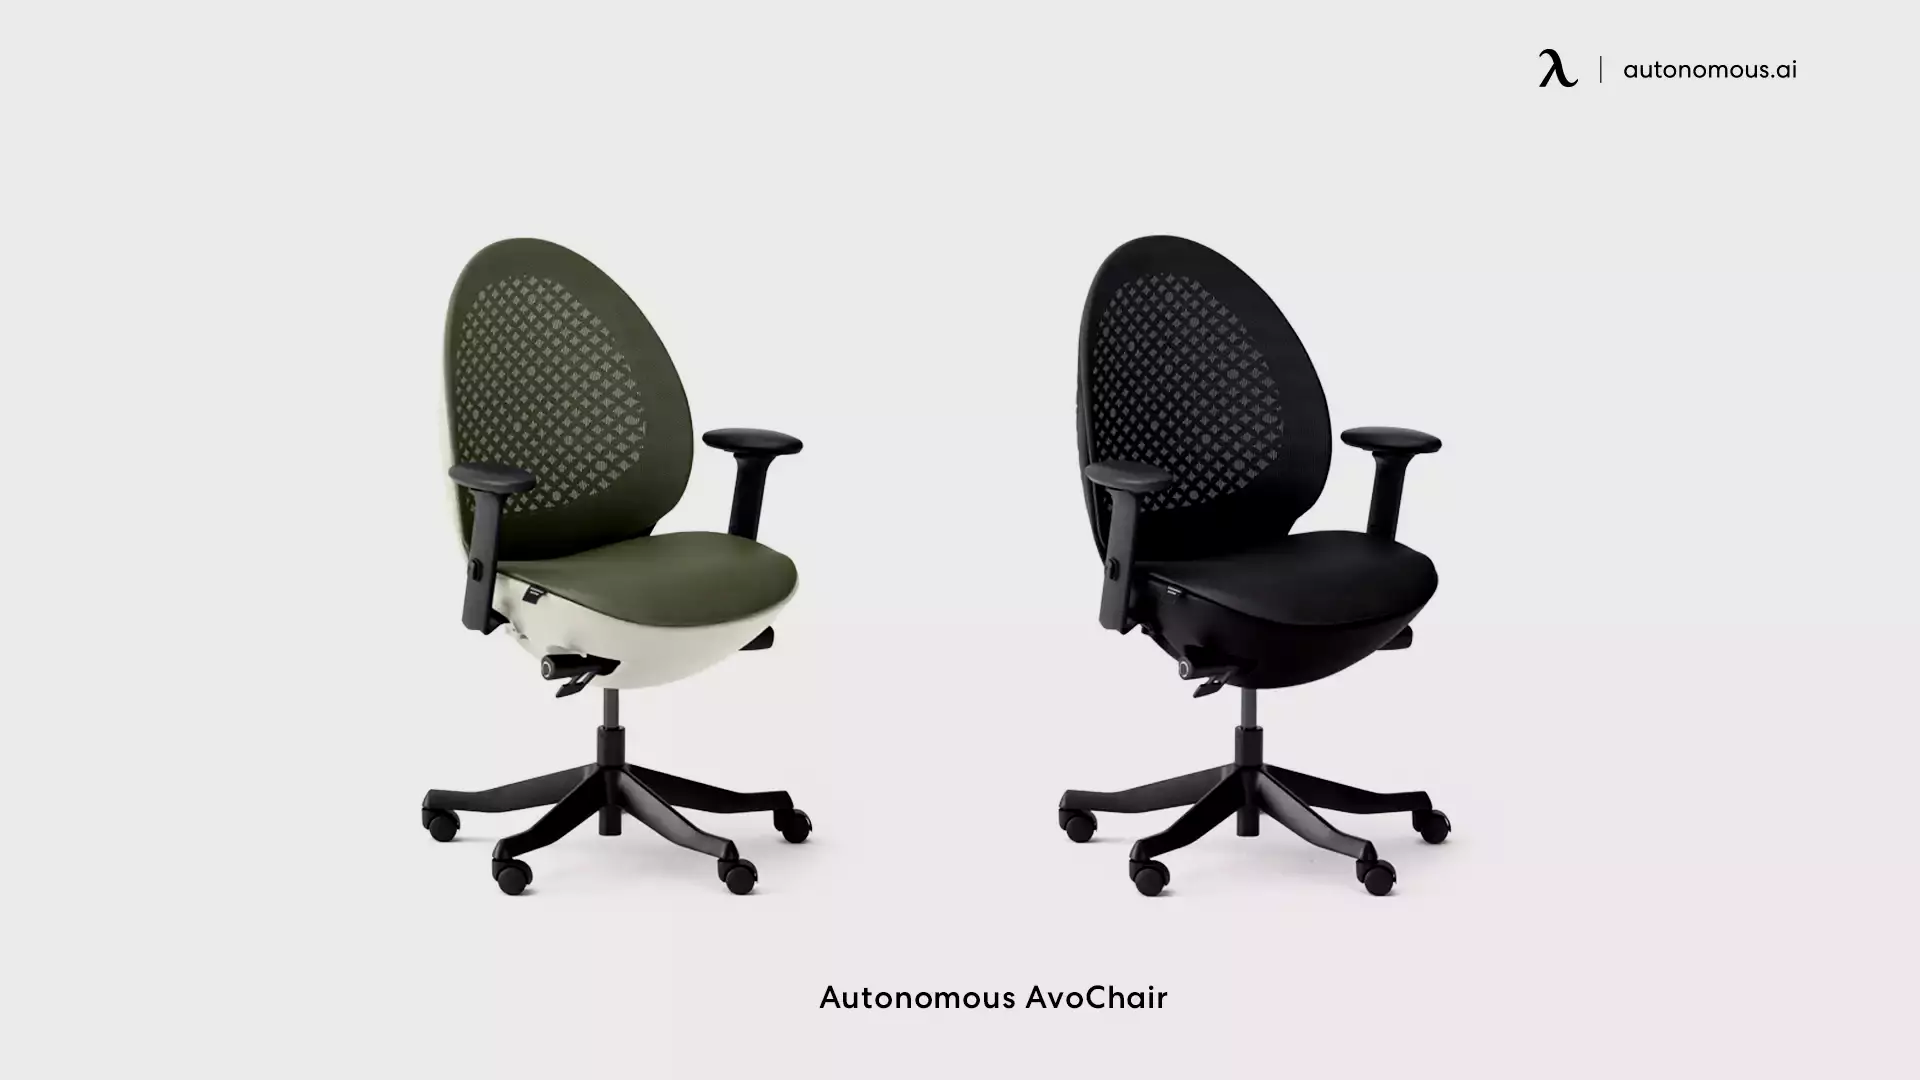 Autonomous AvoChair comfortable desk chair